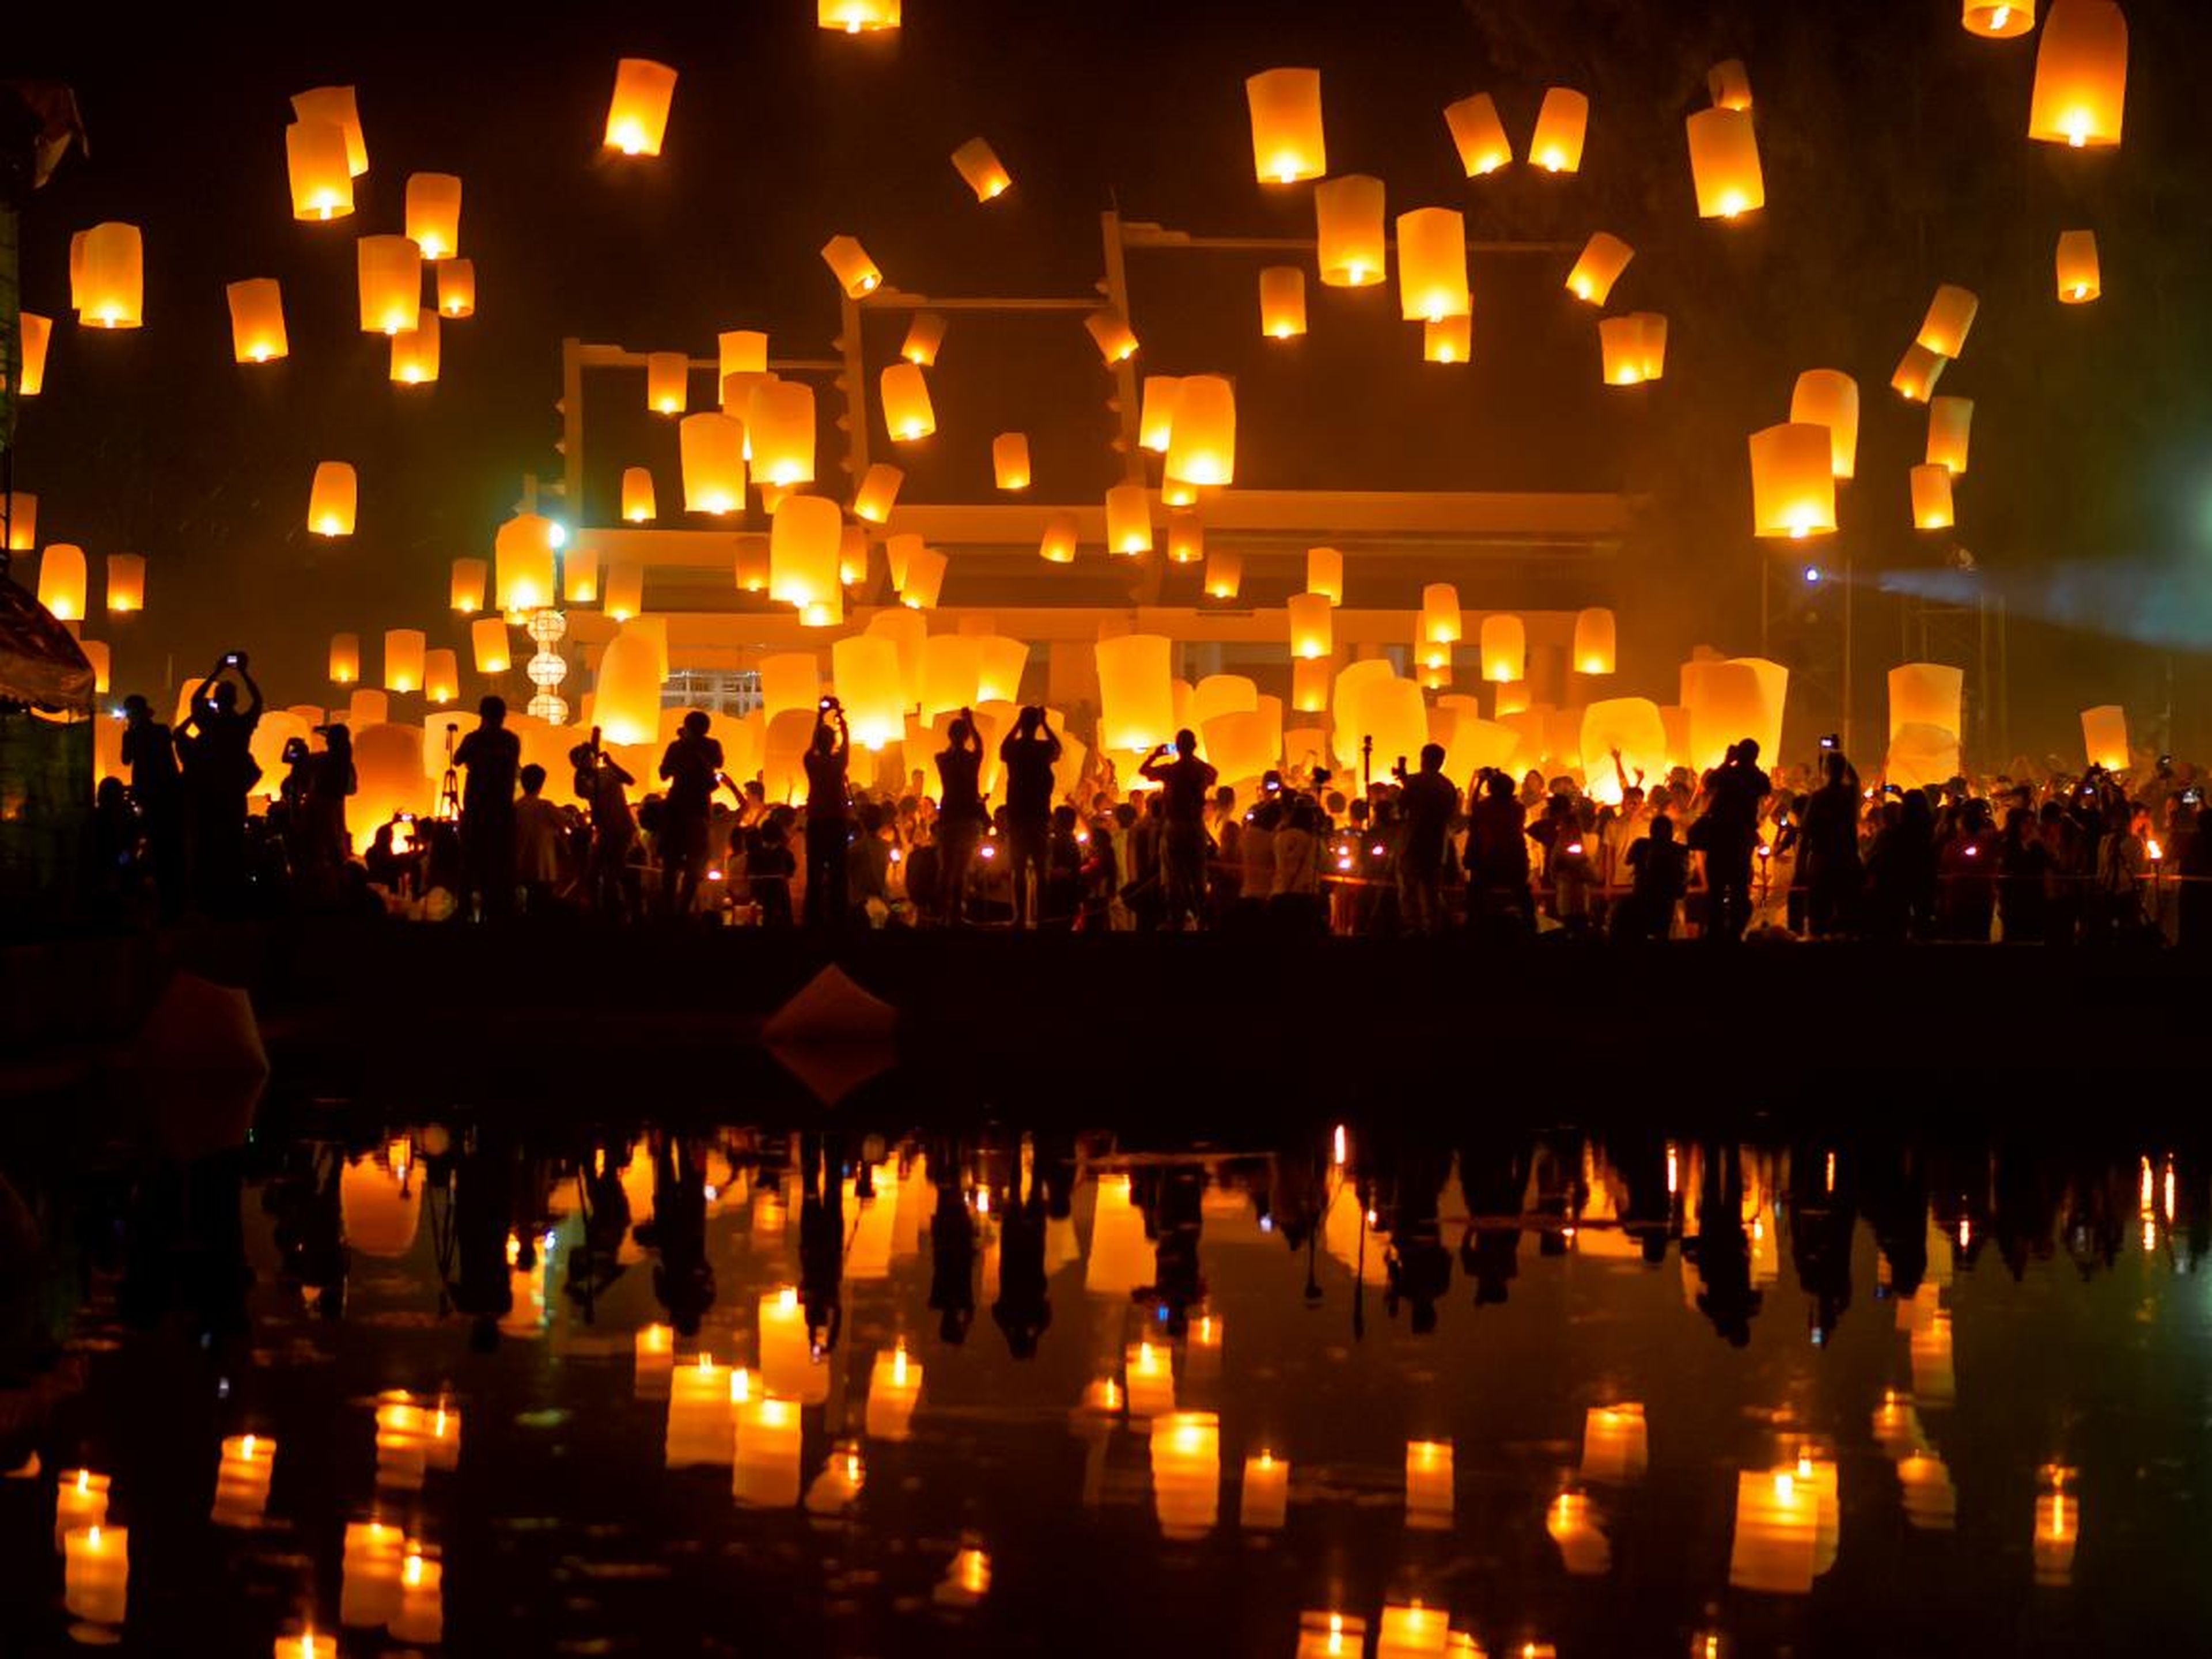 Linternas en el cielo en el festival Yee Peng en Chiang Mai, Tailandia.